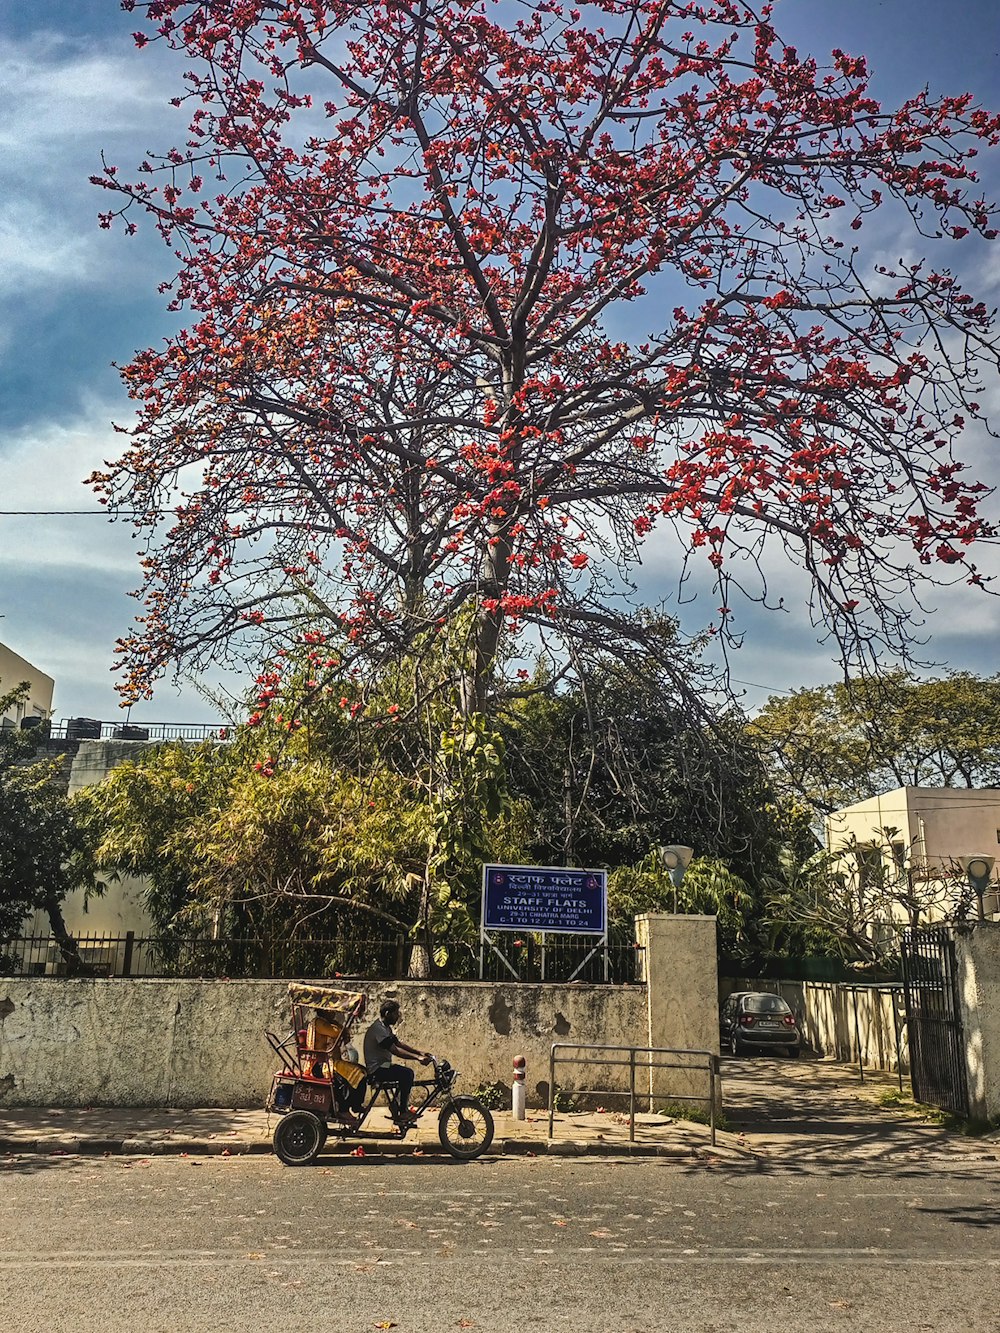 Una moto parcheggiata accanto a un albero con fiori rossi